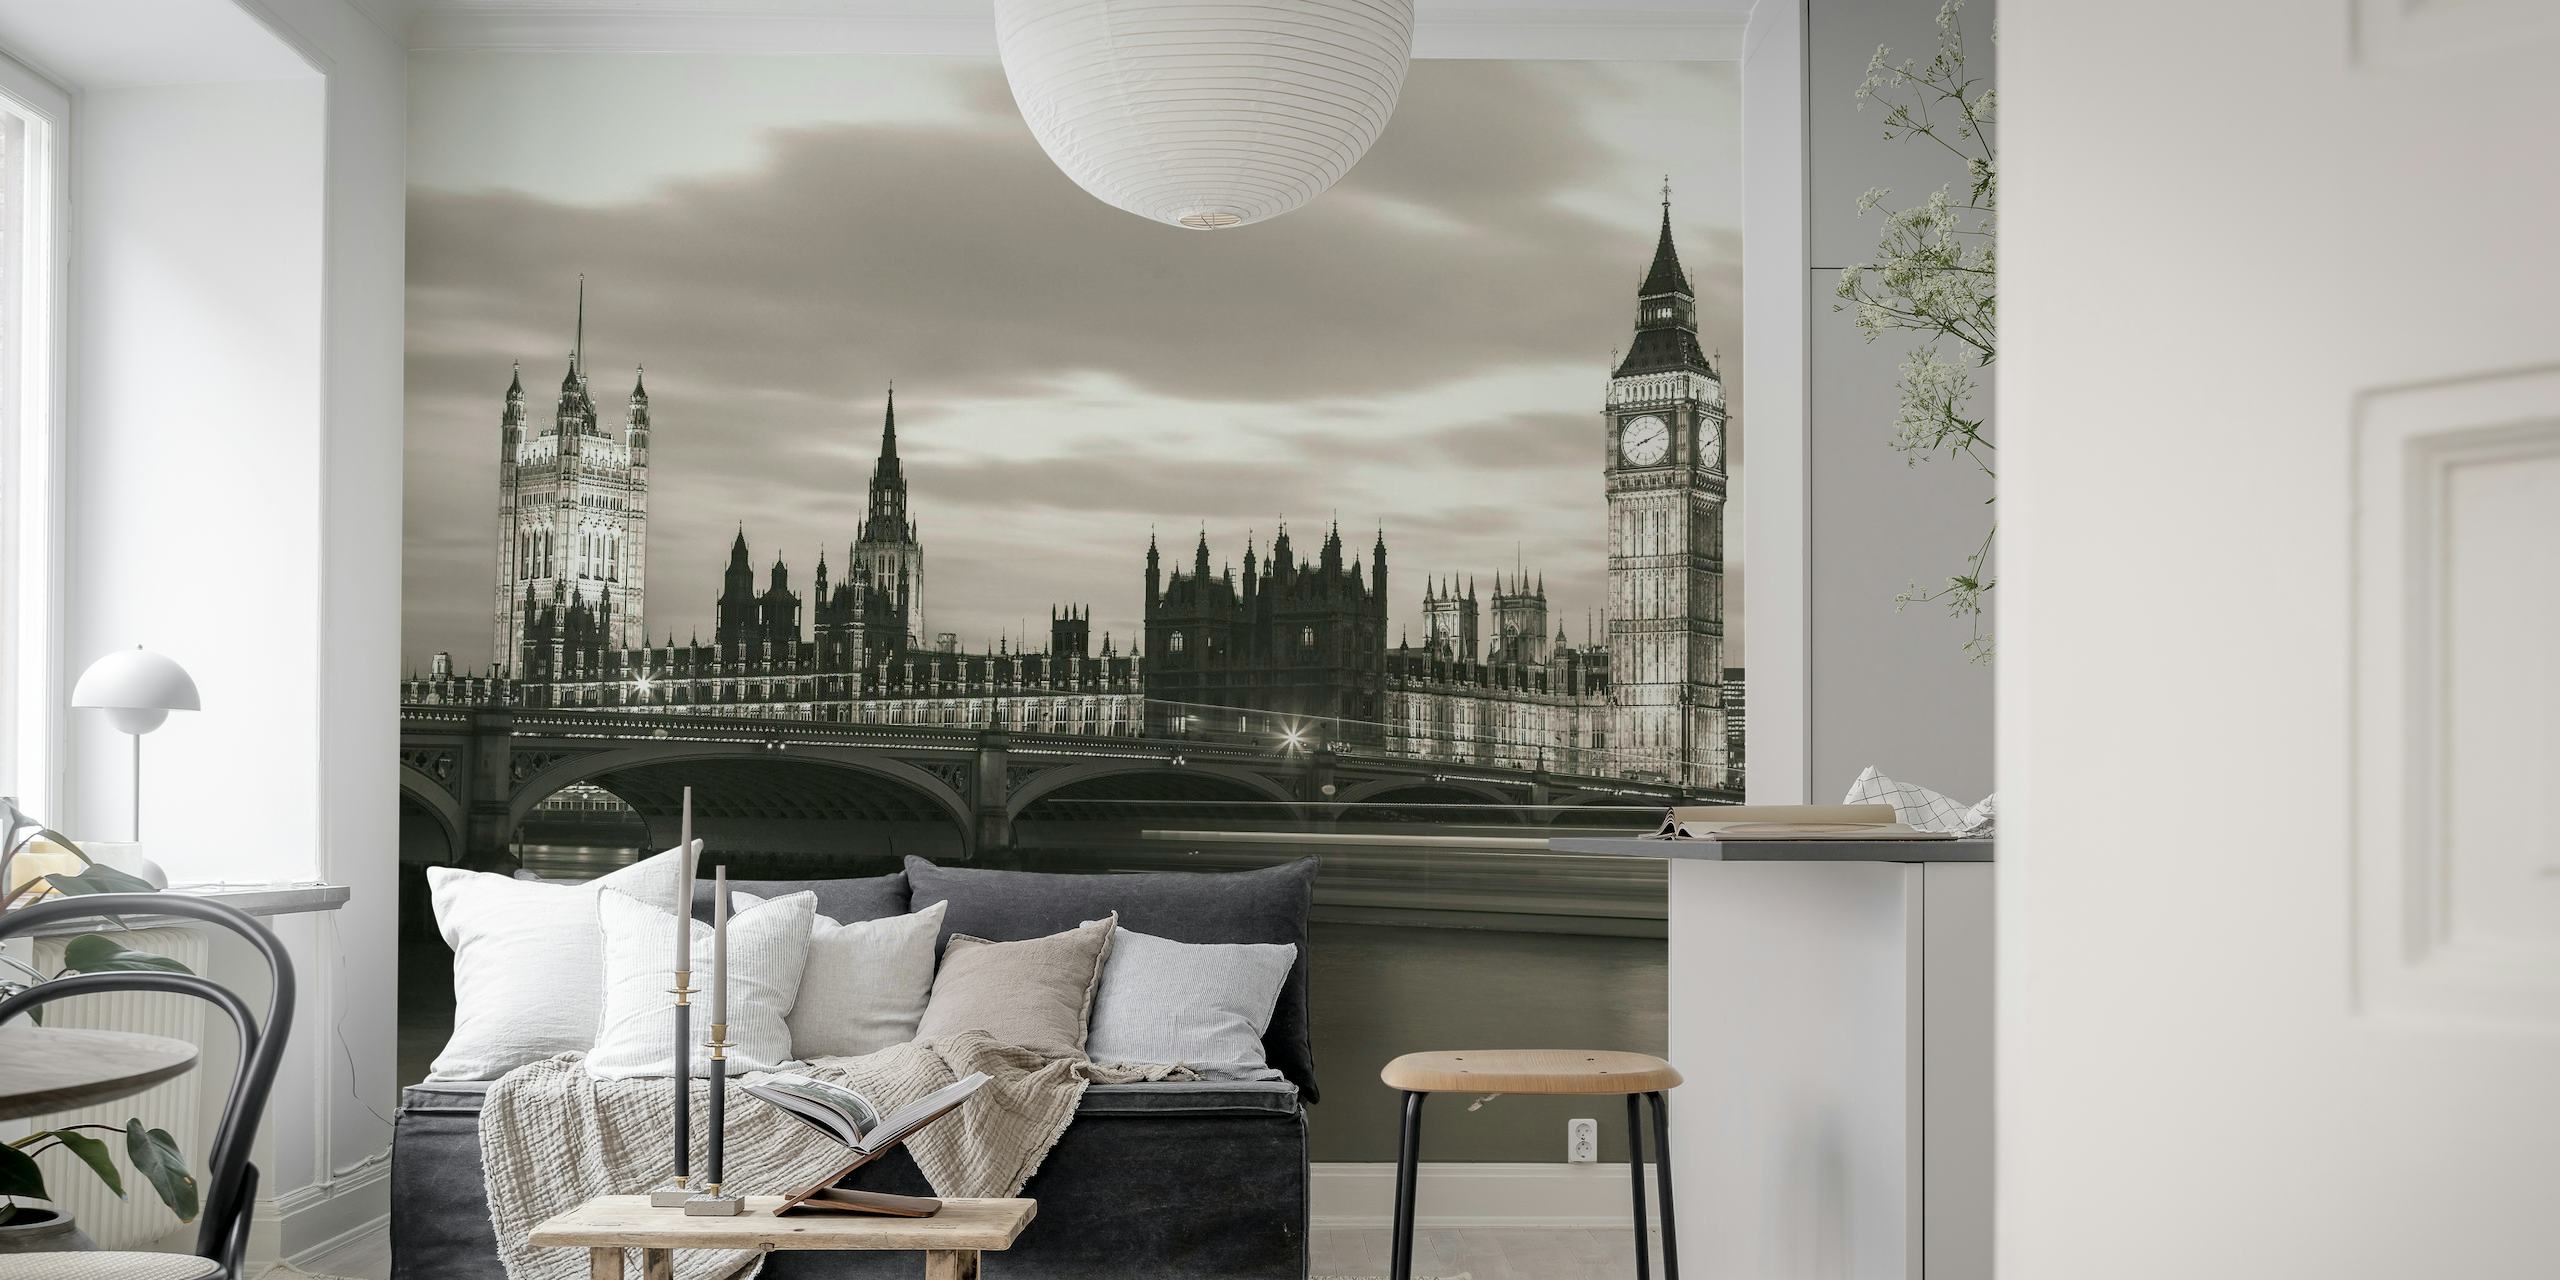 Sort og hvidt vægmaleri af Westminster Bridge og Big Ben i skumringen